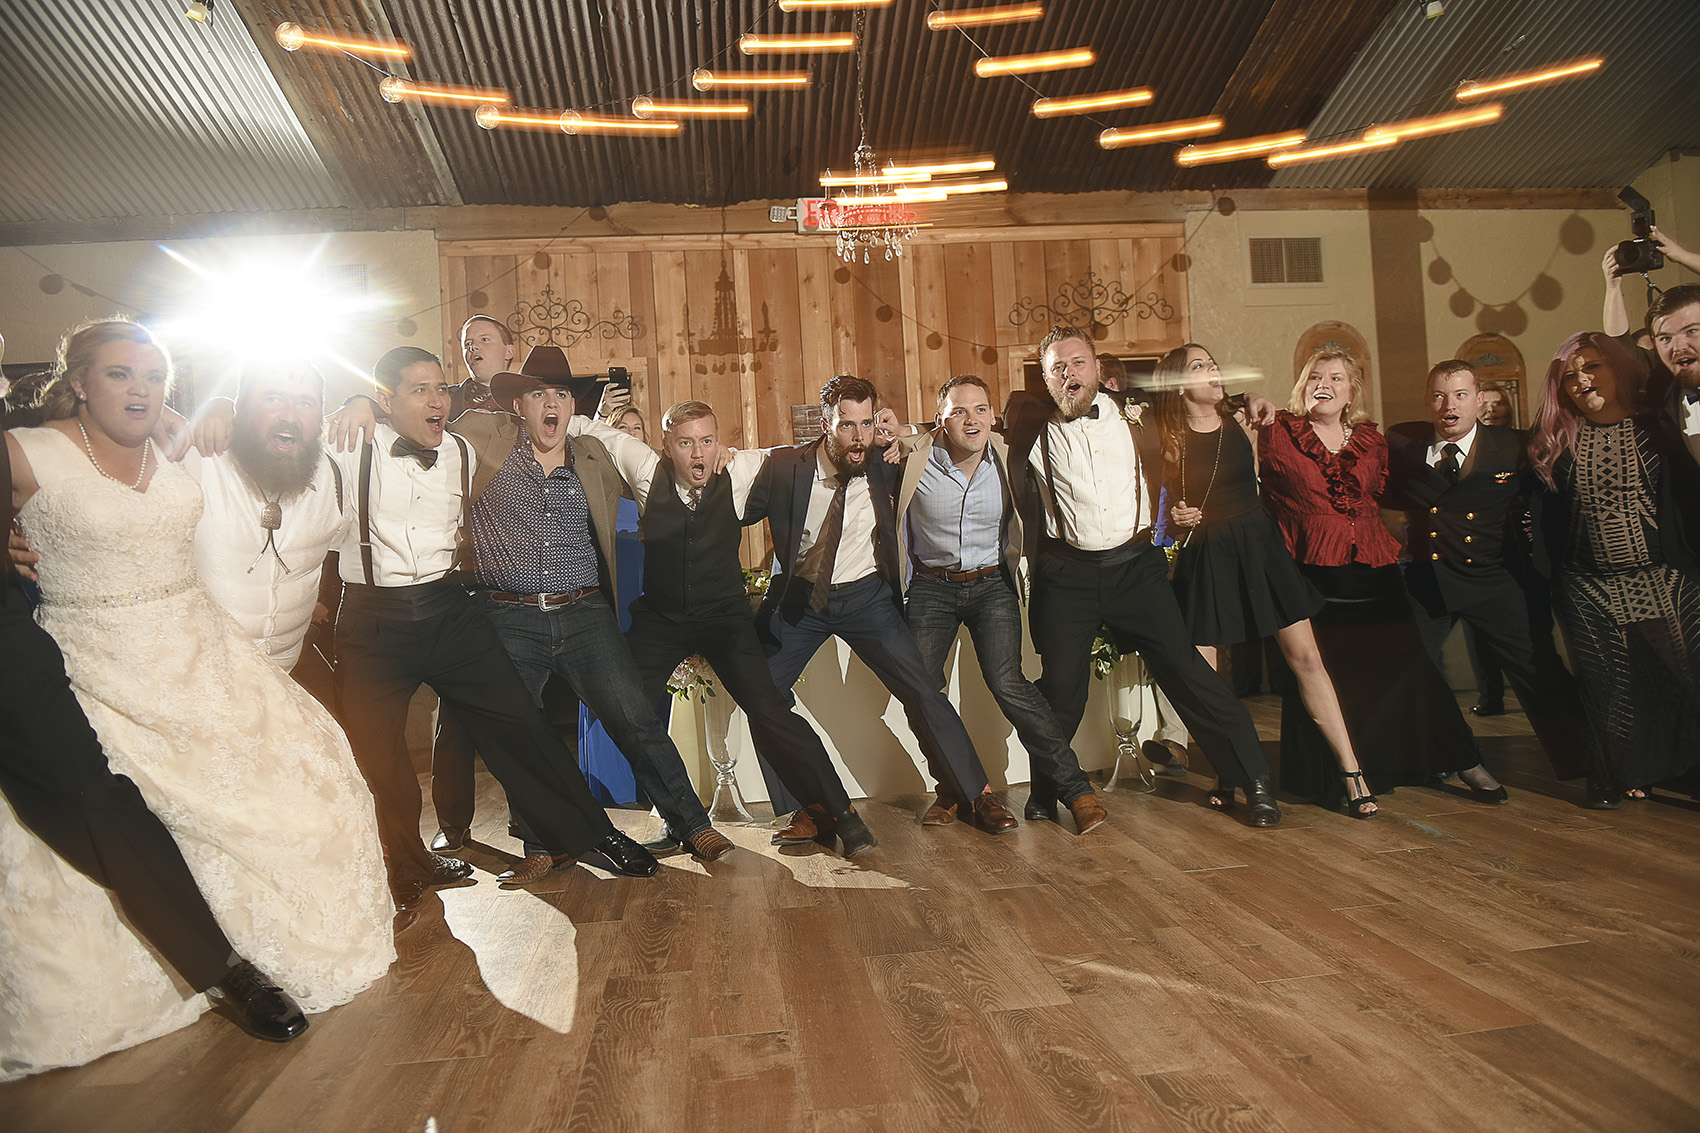 moffitt-oaks-houston-wedding-venue-barn-dance-floor-lighting